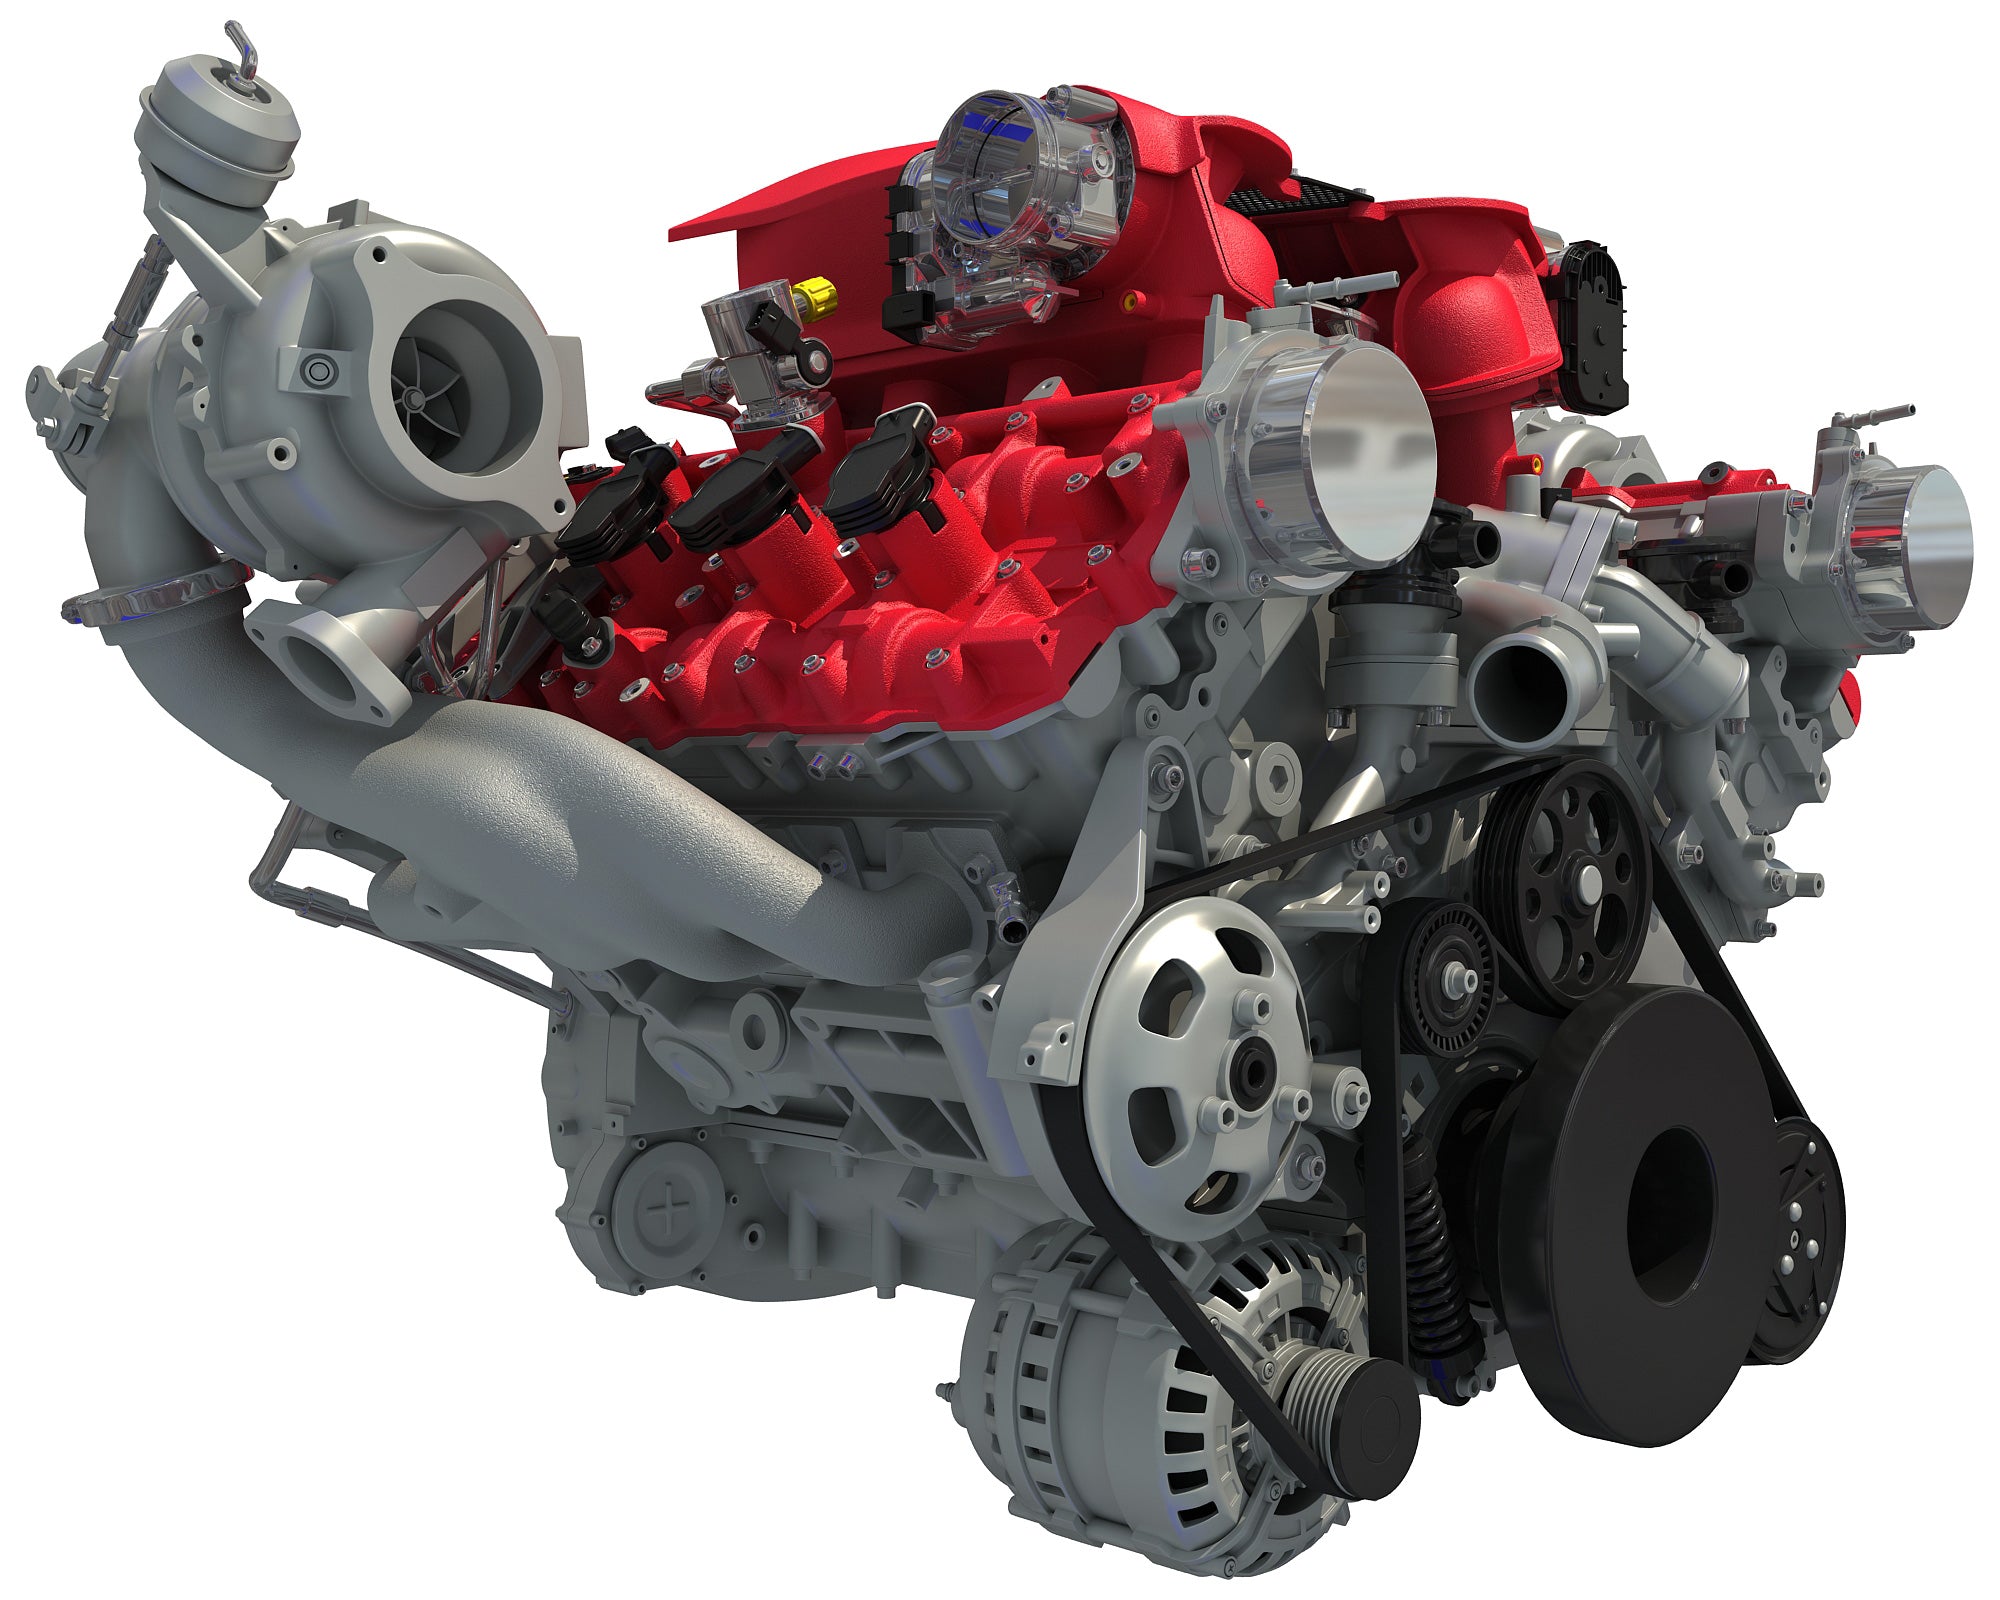 Ferrari Turbocharged V8 Engine